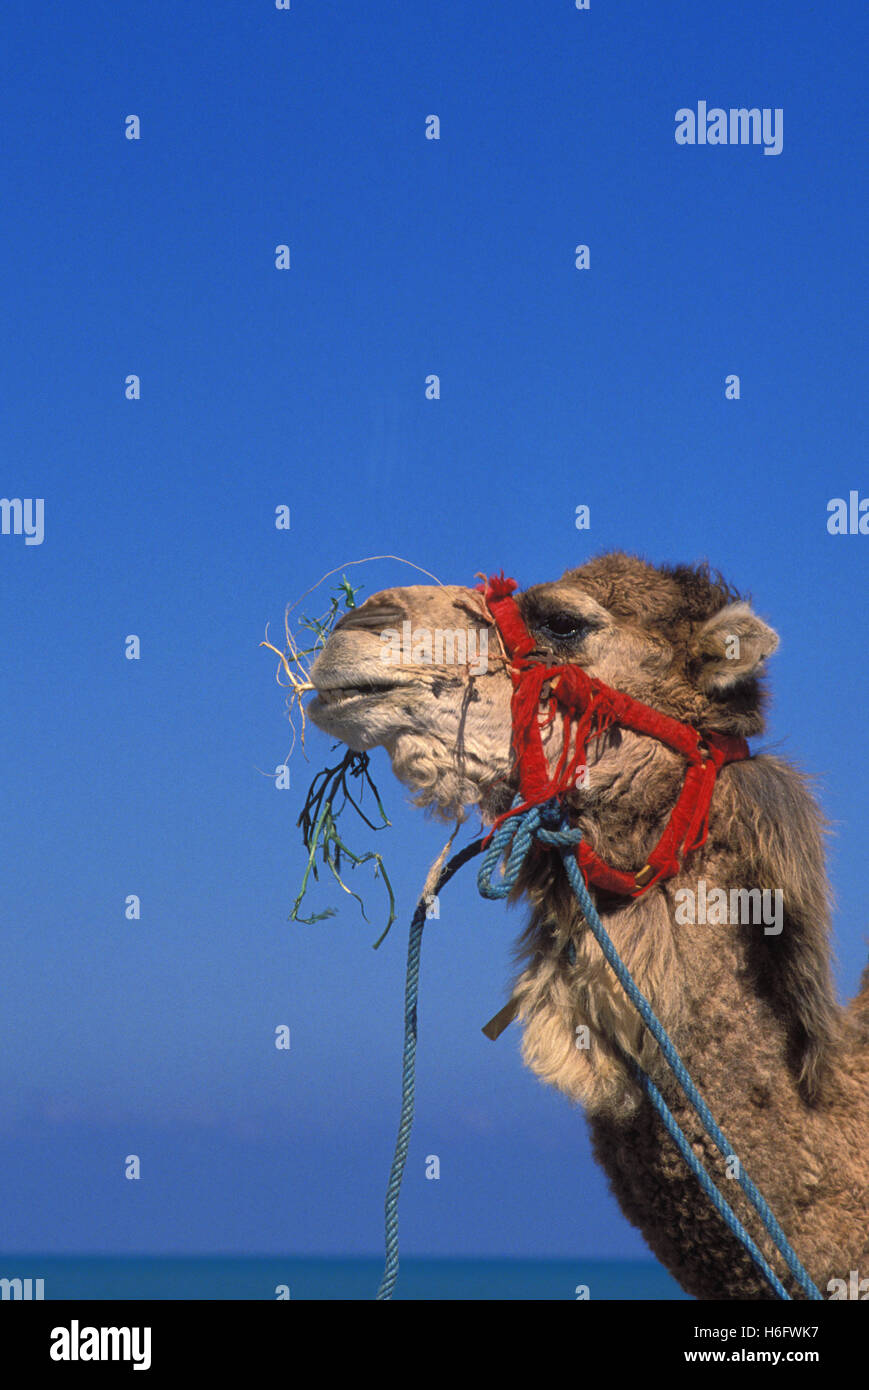 Tunisia, Jarbah Island, camel at the beach Sidi Mahrez. Stock Photo